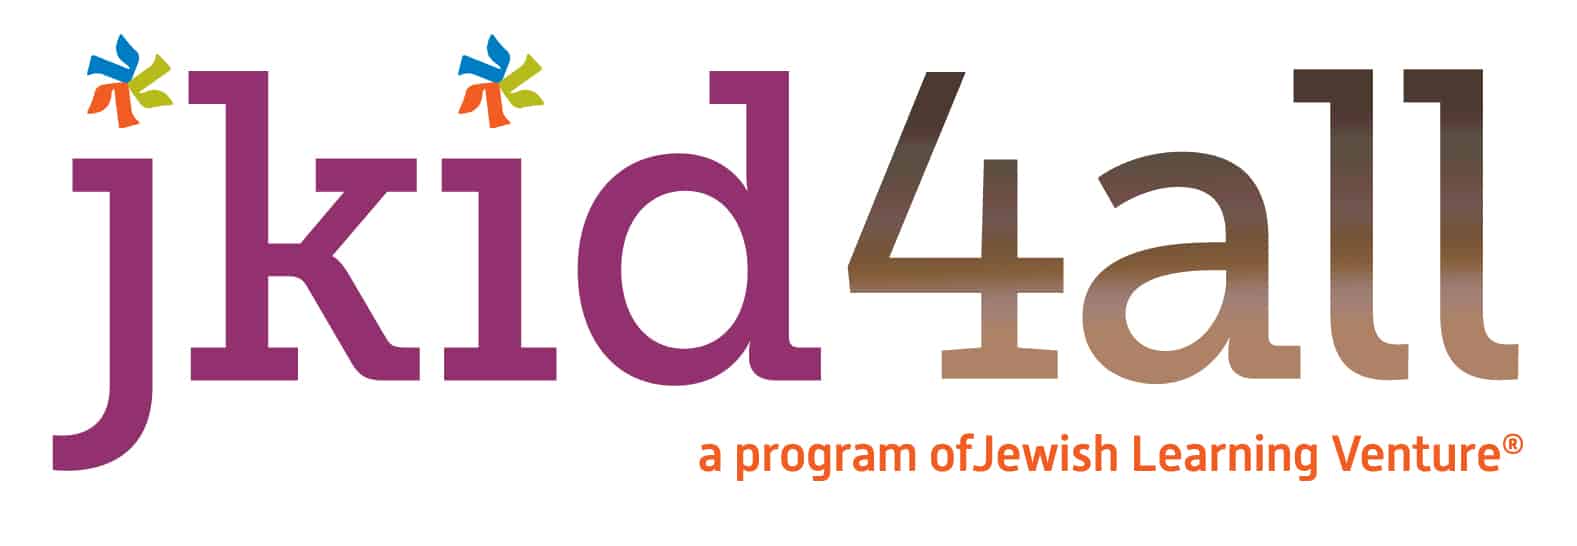 logo for jkid4all